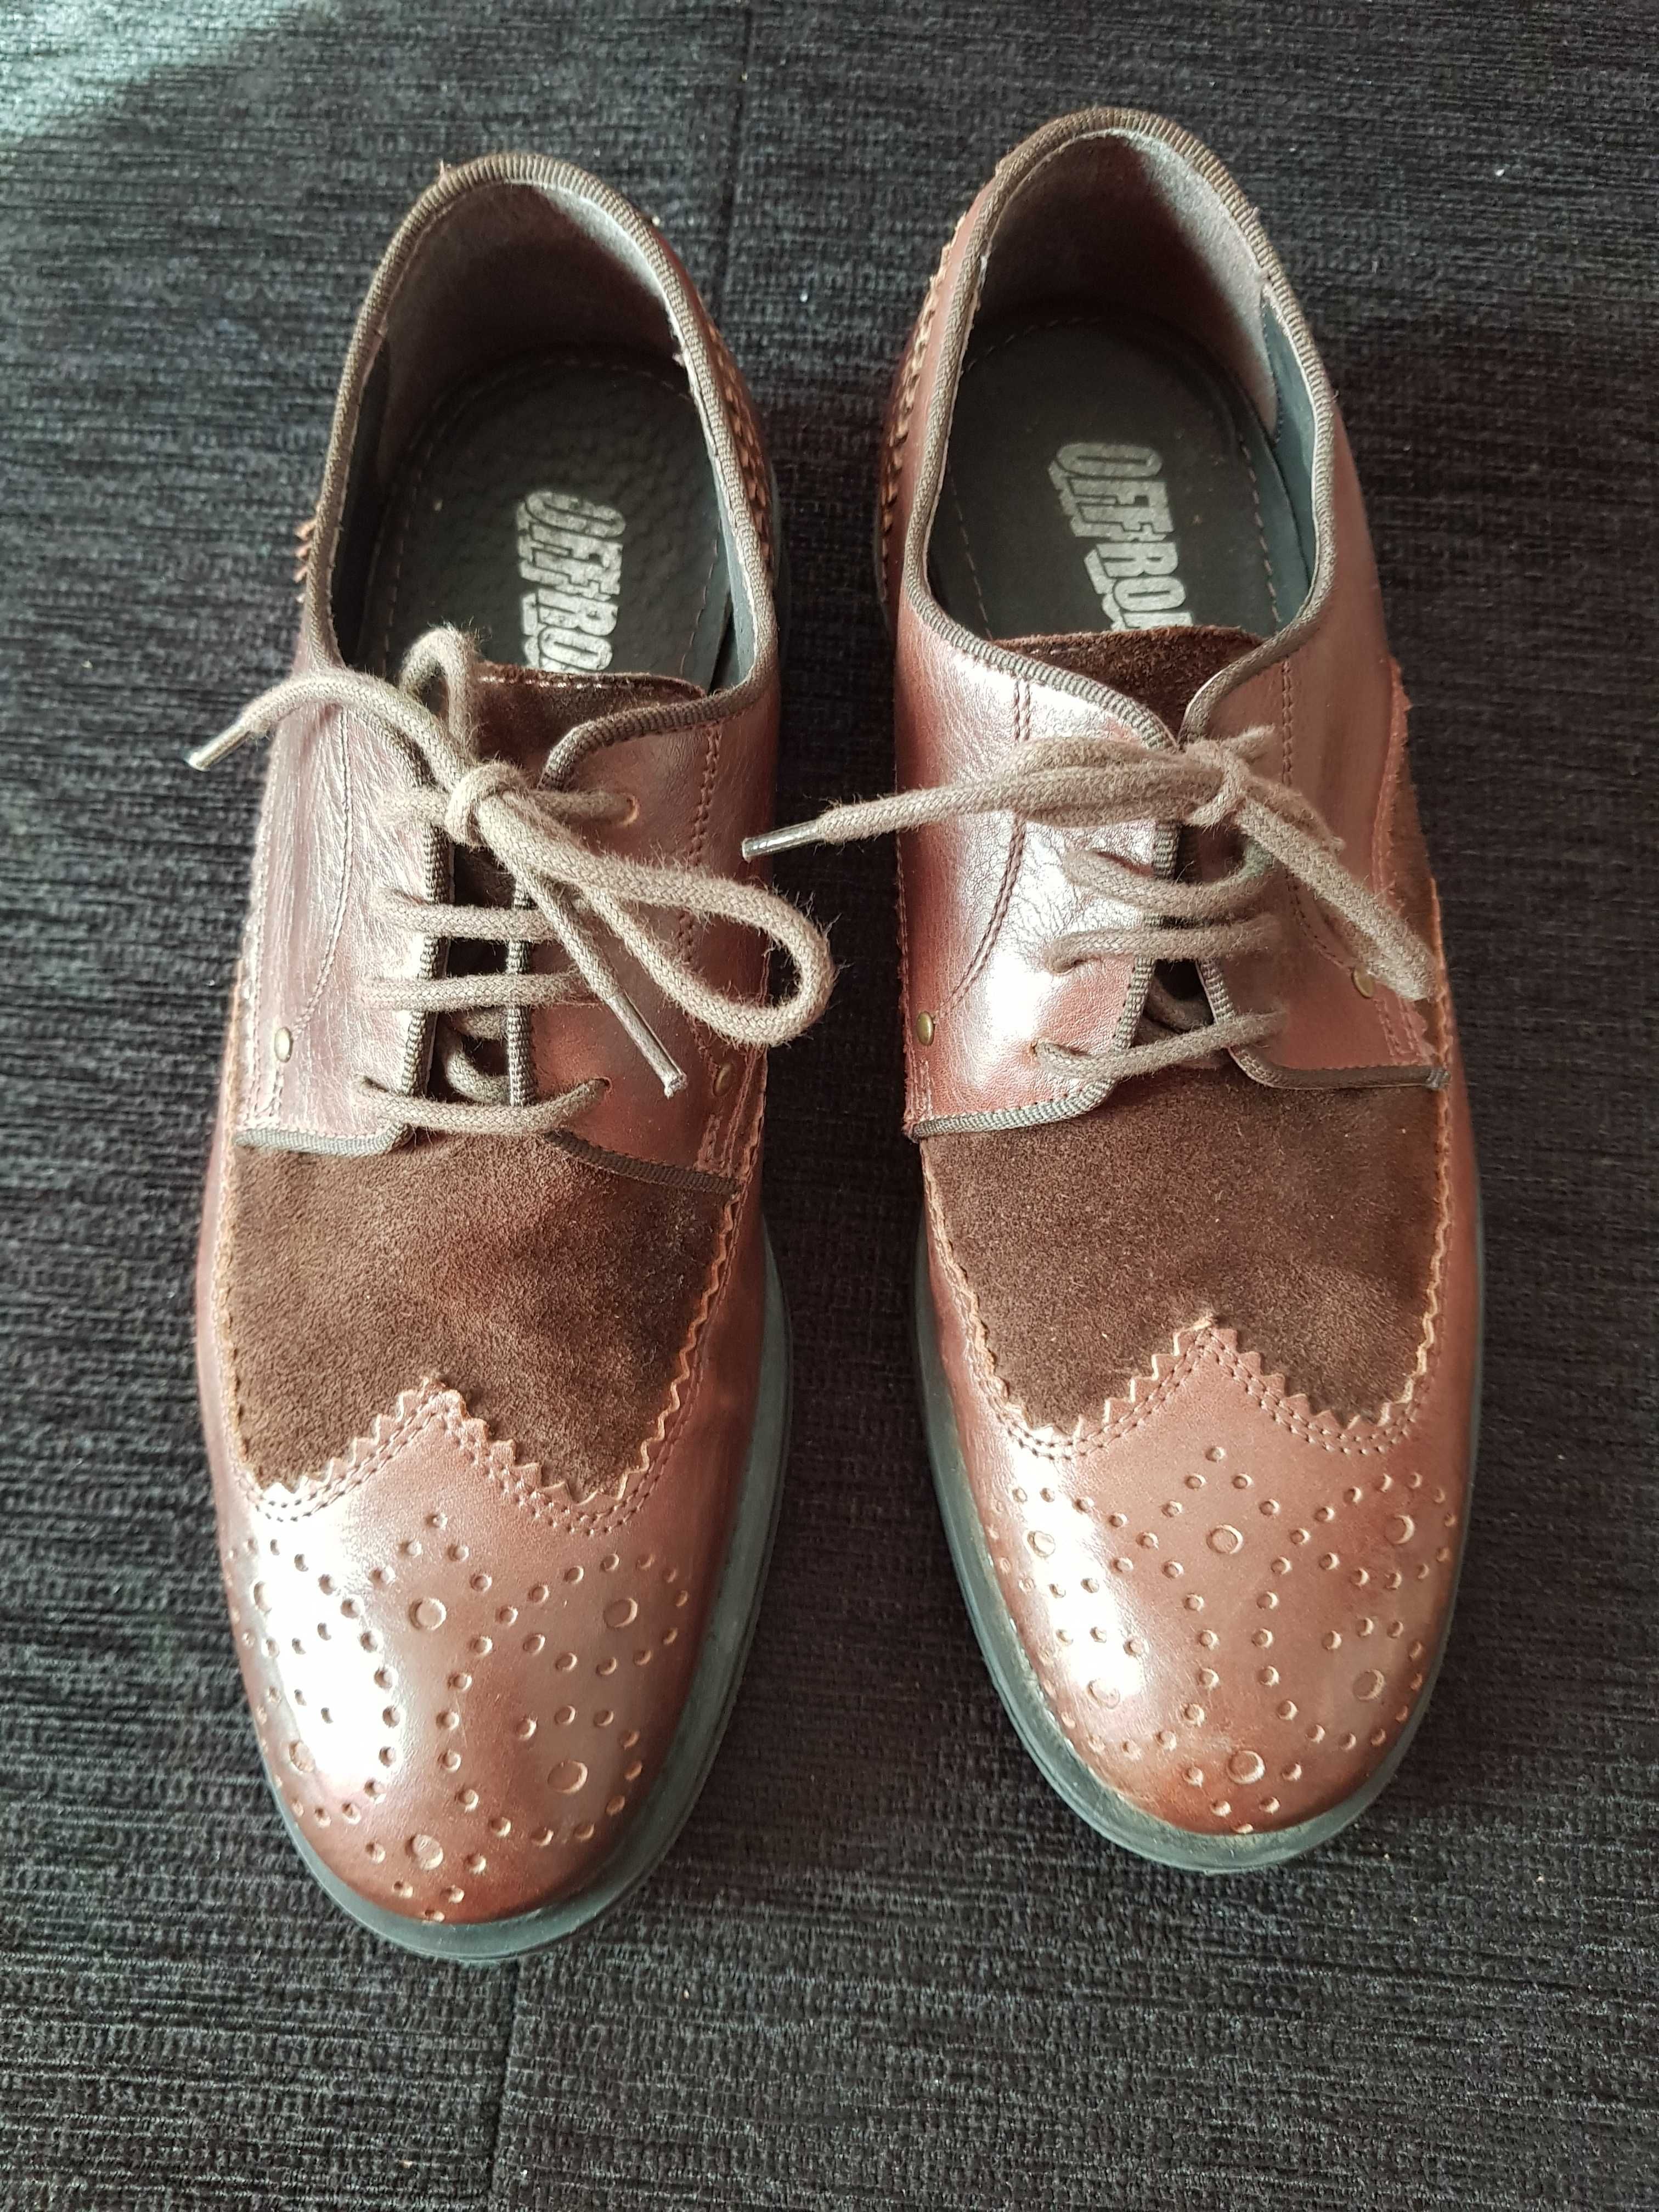 Pantofi din piele model Brogue